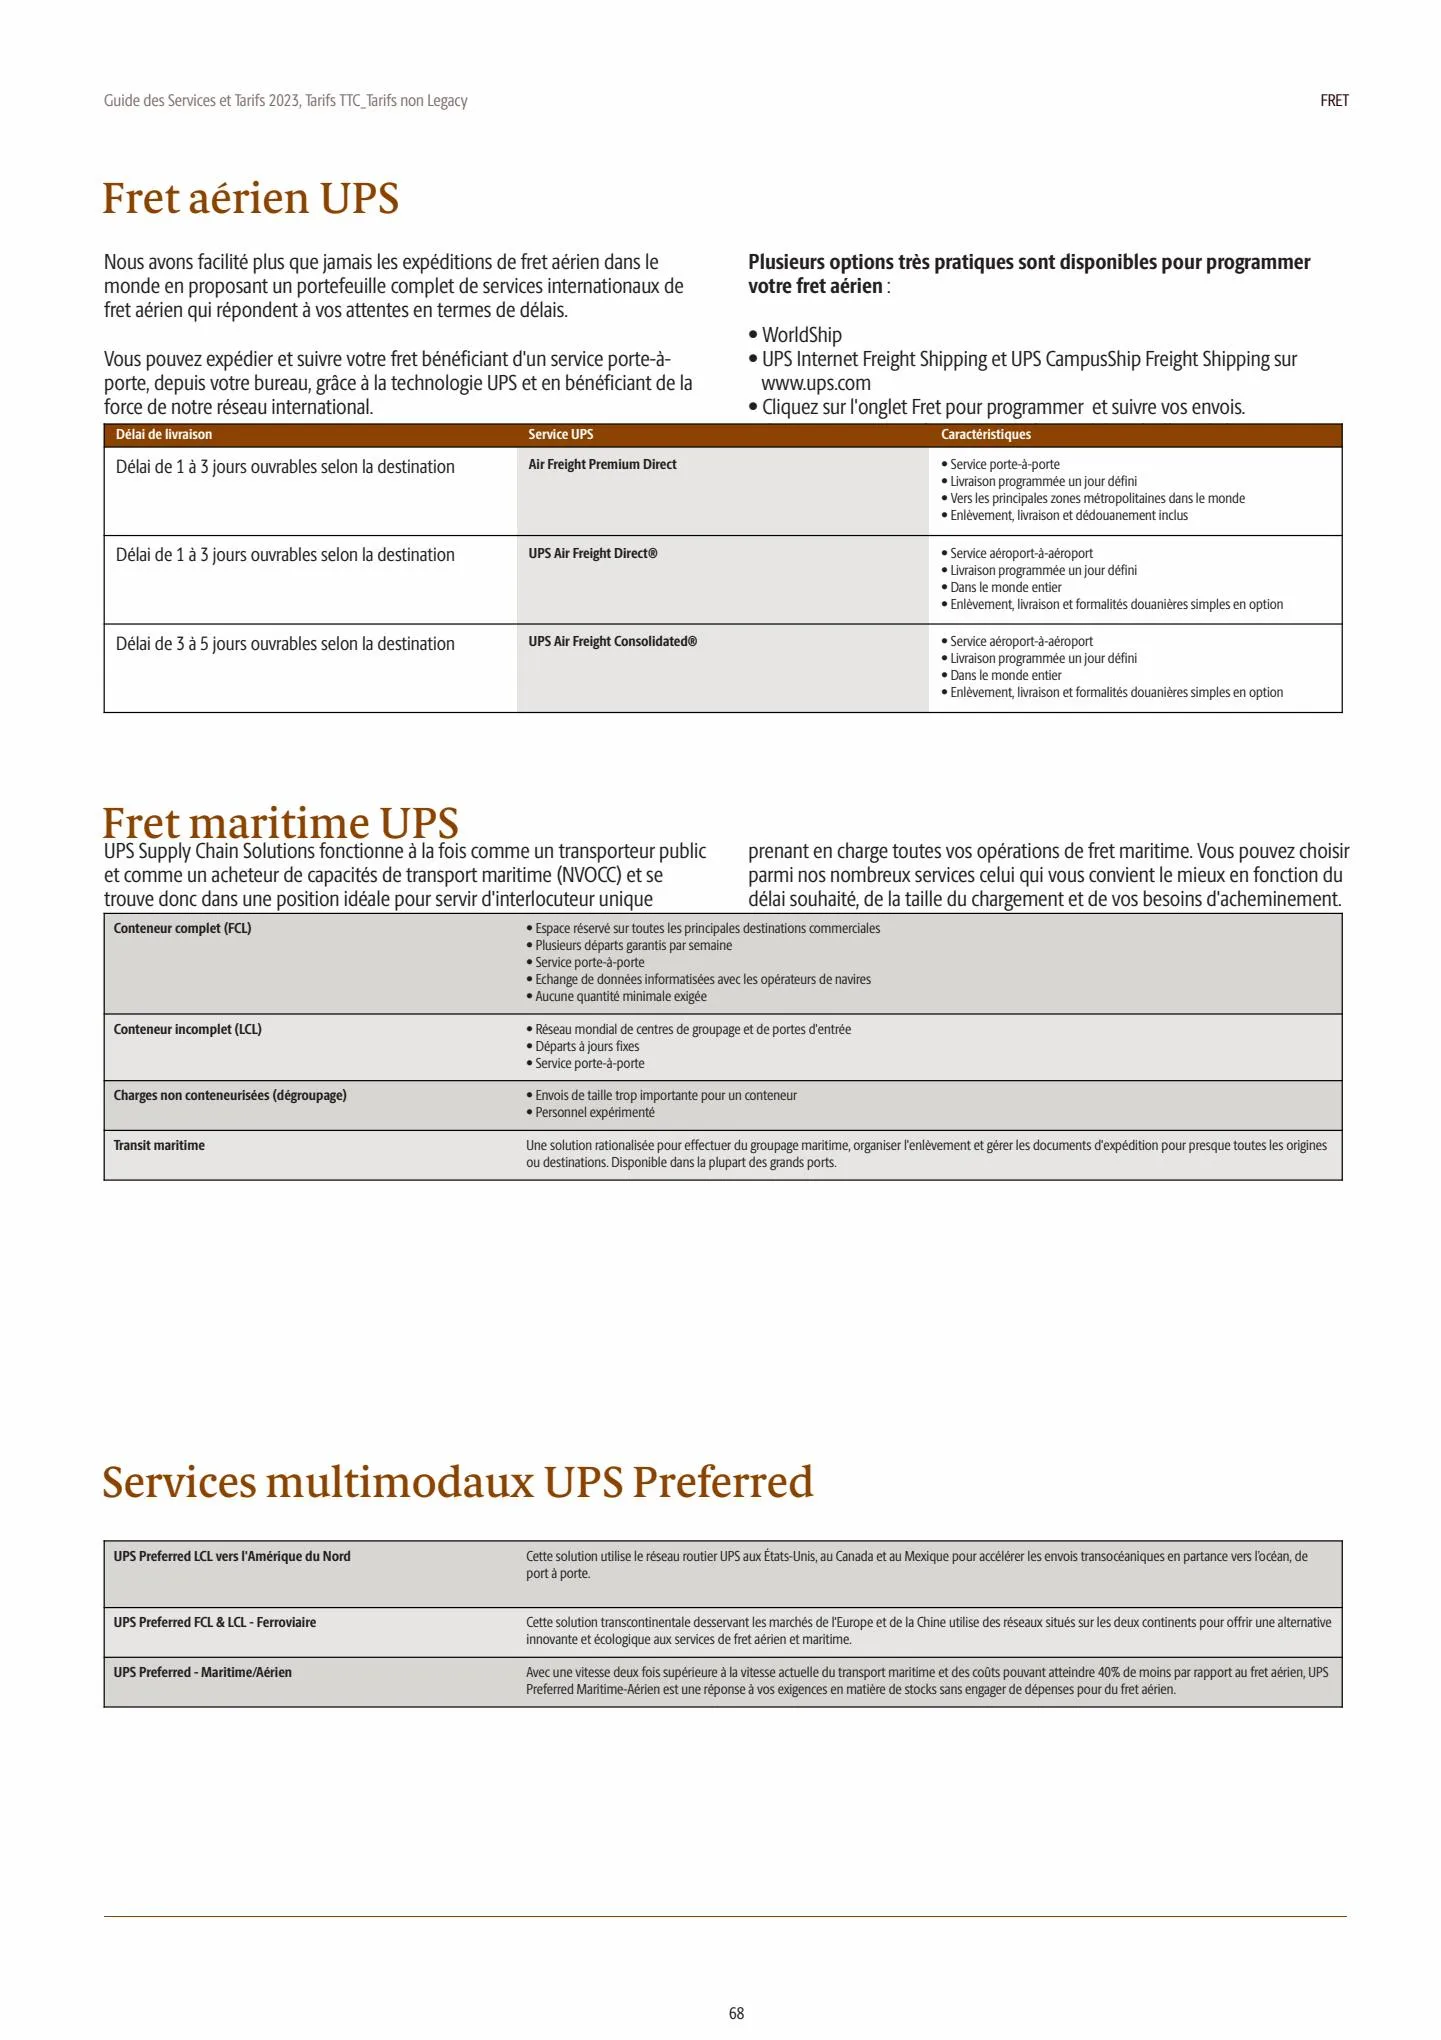 Catalogue Guide des Services et Tarifs 2023, page 00068